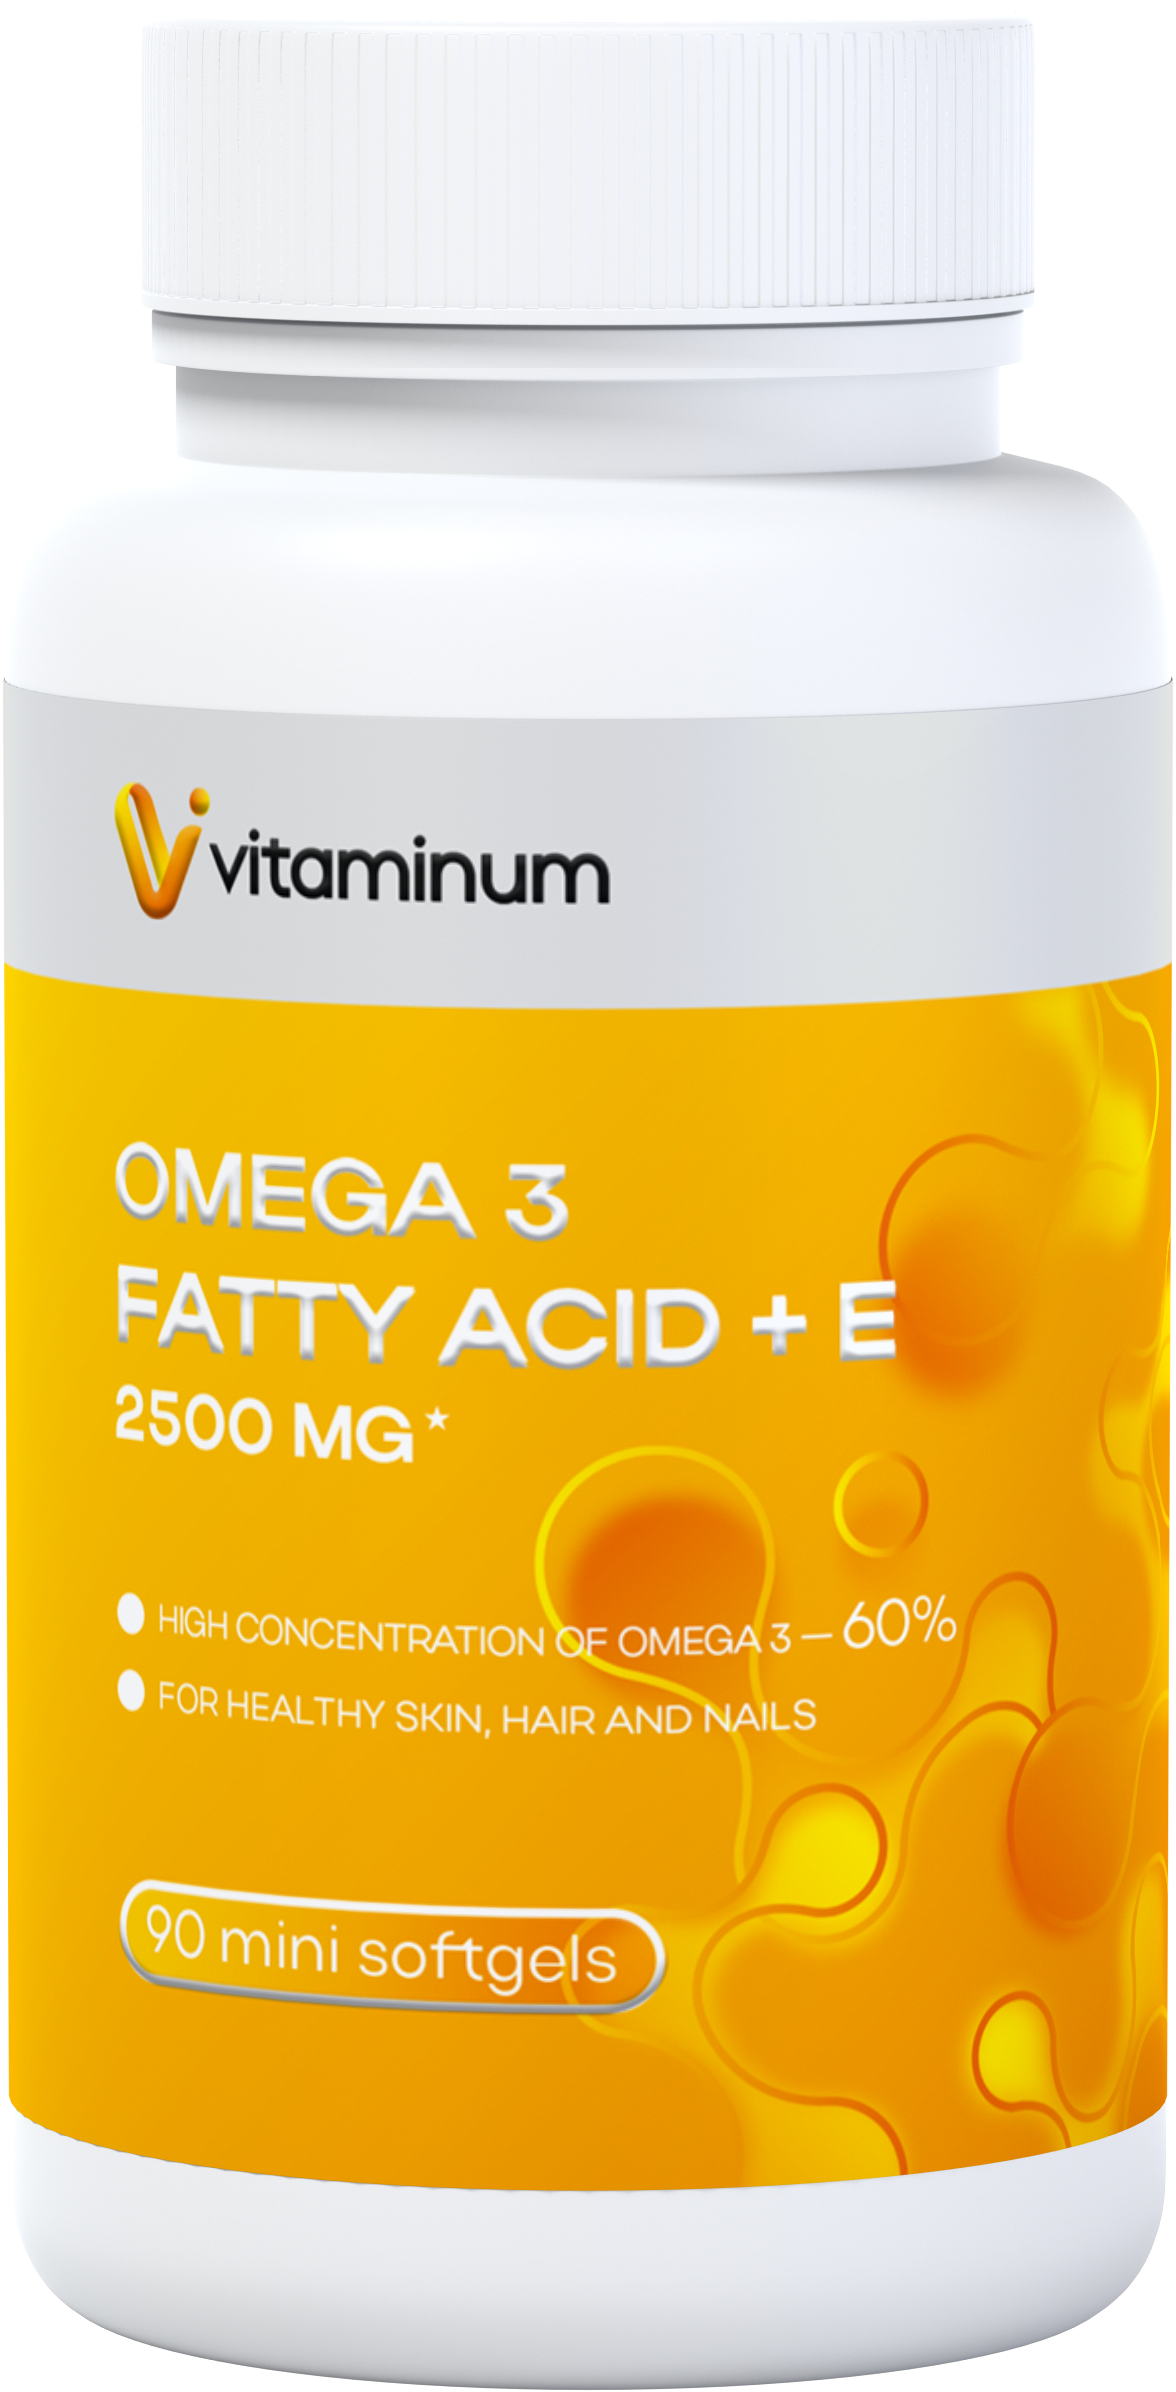  Vitaminum ОМЕГА 3 60% + витамин Е (2500 MG*) 90 капсул 700 мг   в Анапе